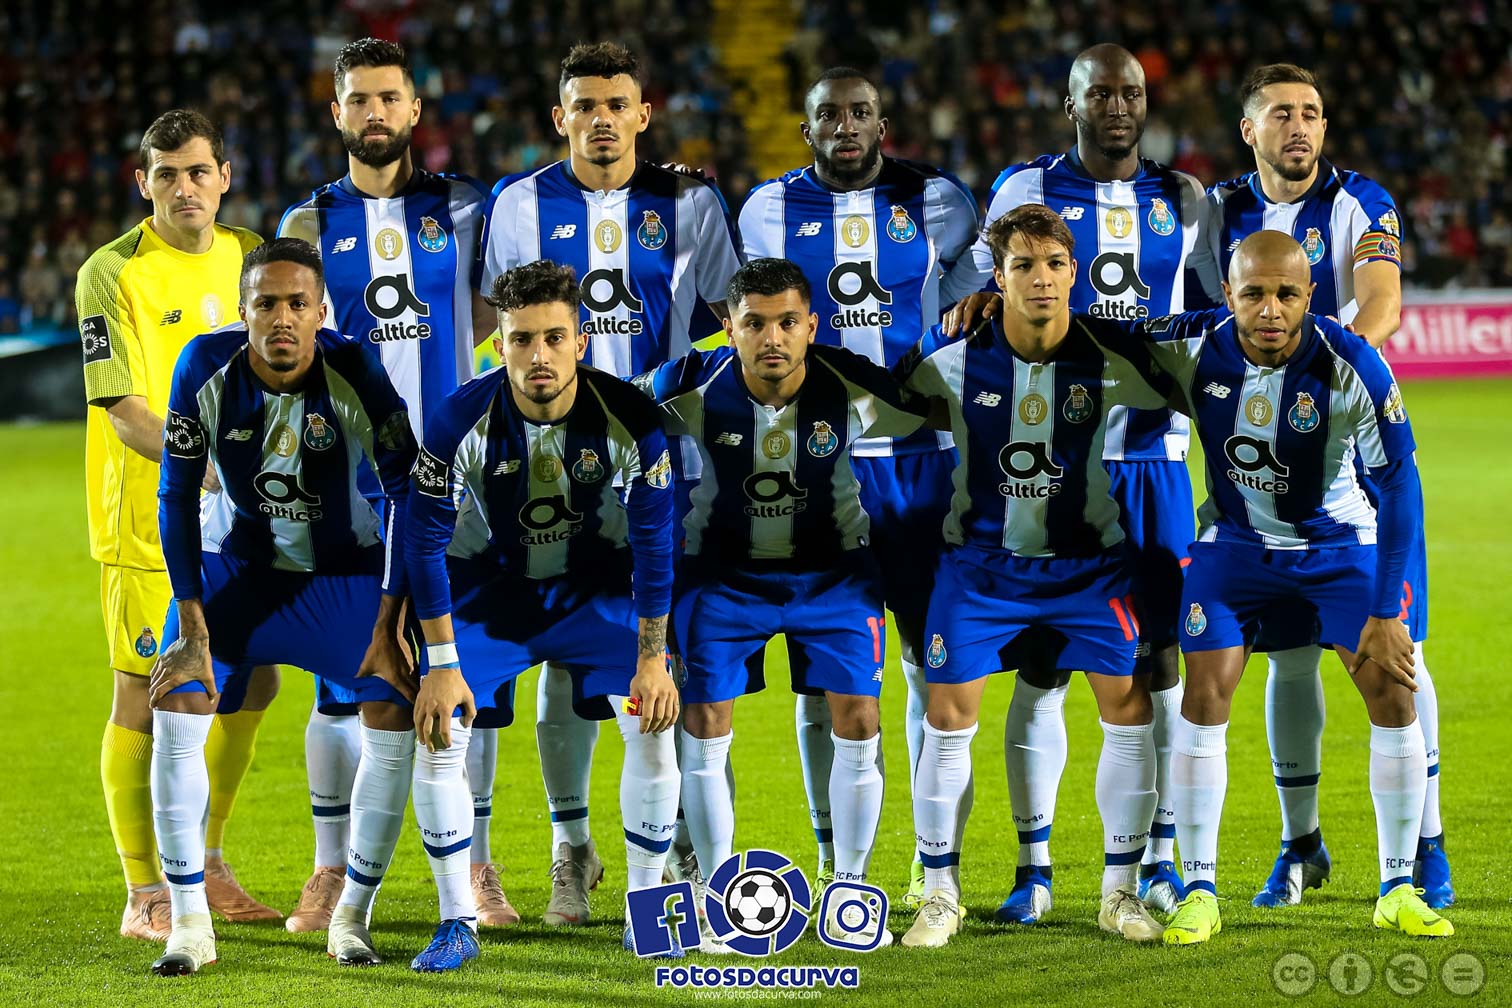 FC Porto B e Tondela empataram em jogo equilibrado